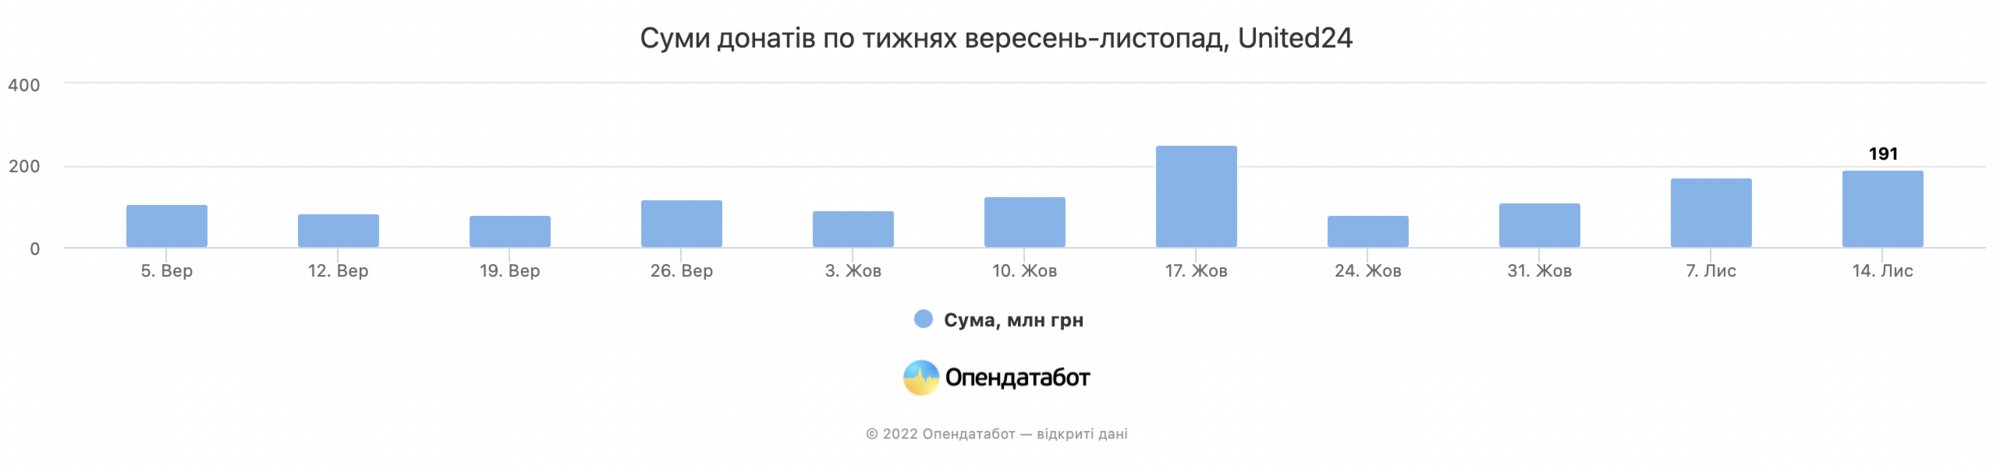 Украинцы после массированных ударов РФ по инфраструктуре увеличили донаты на ВСУ почти вдвое за месяц: озвучены цифры